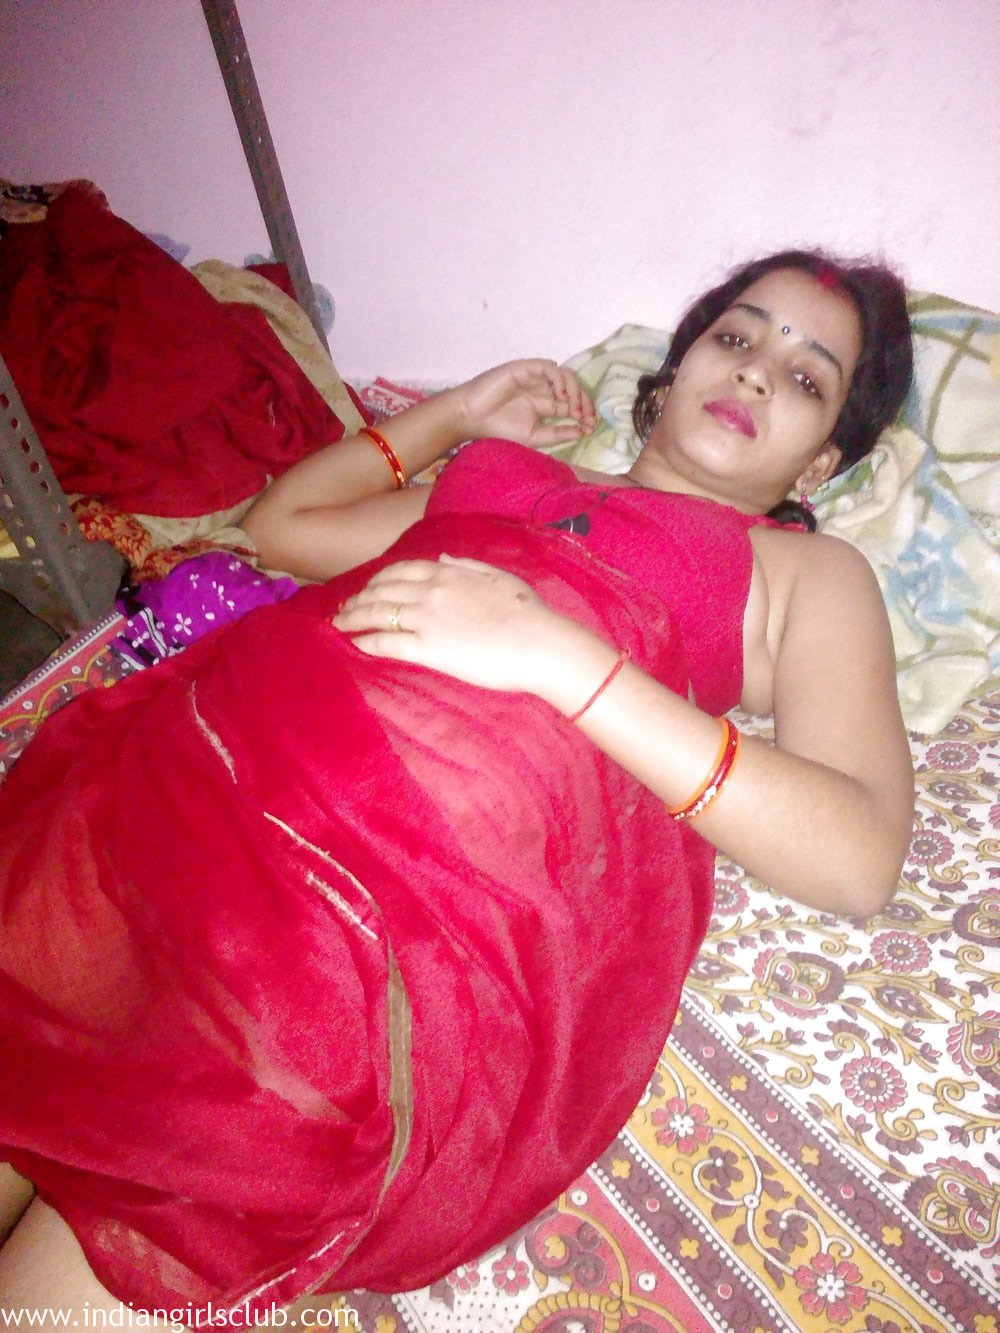 Desi bhabhi nude photos